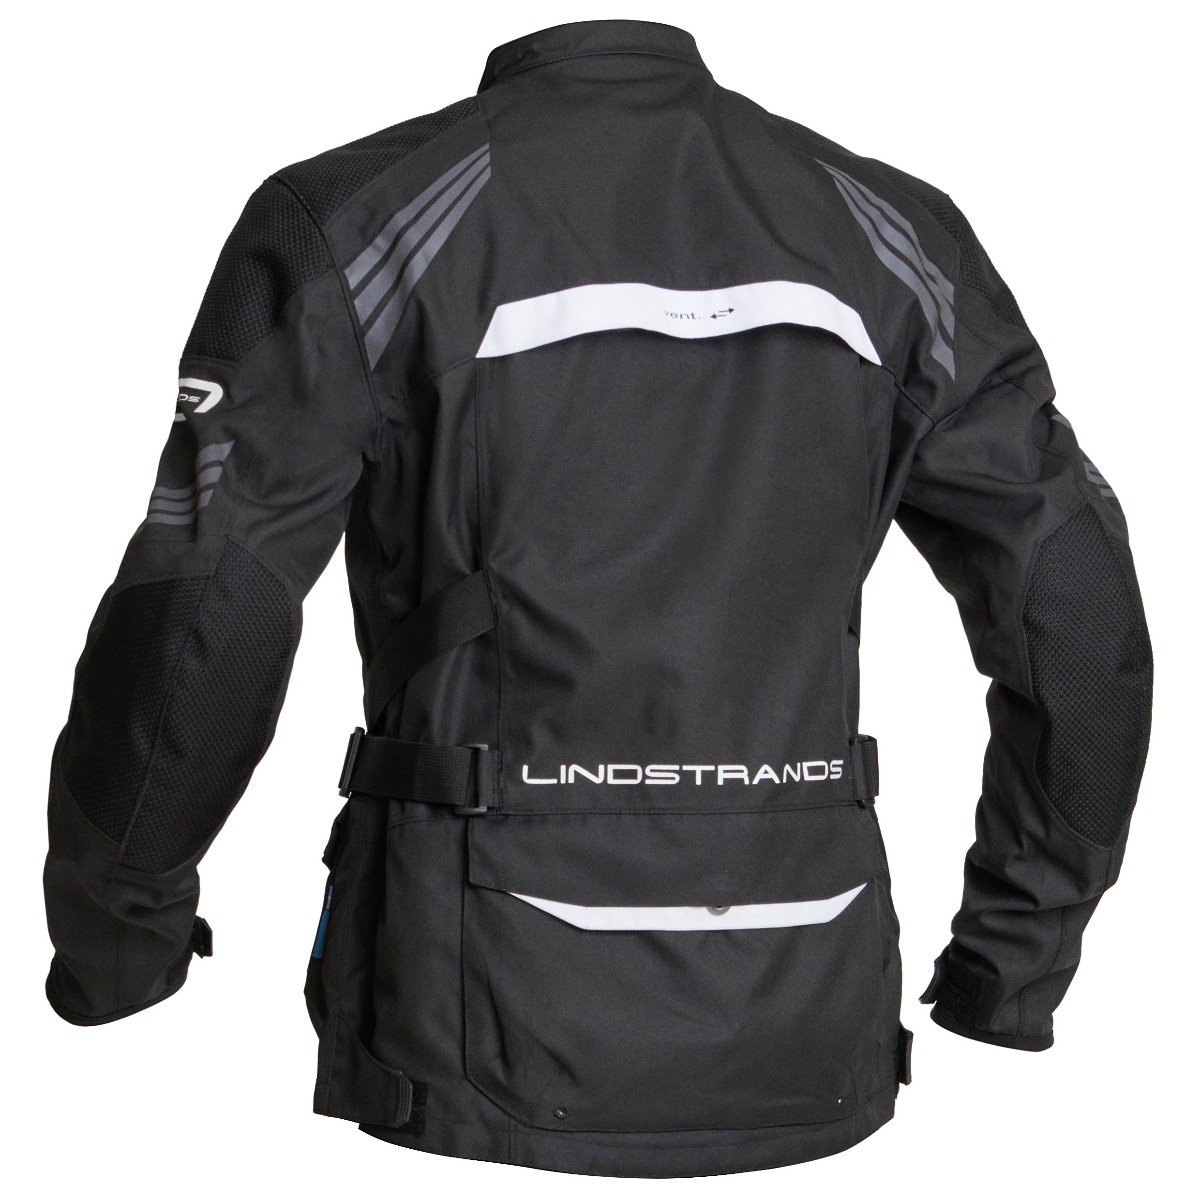 Image of Lindstrands Transtrand Jacket Black White Size 50 EN